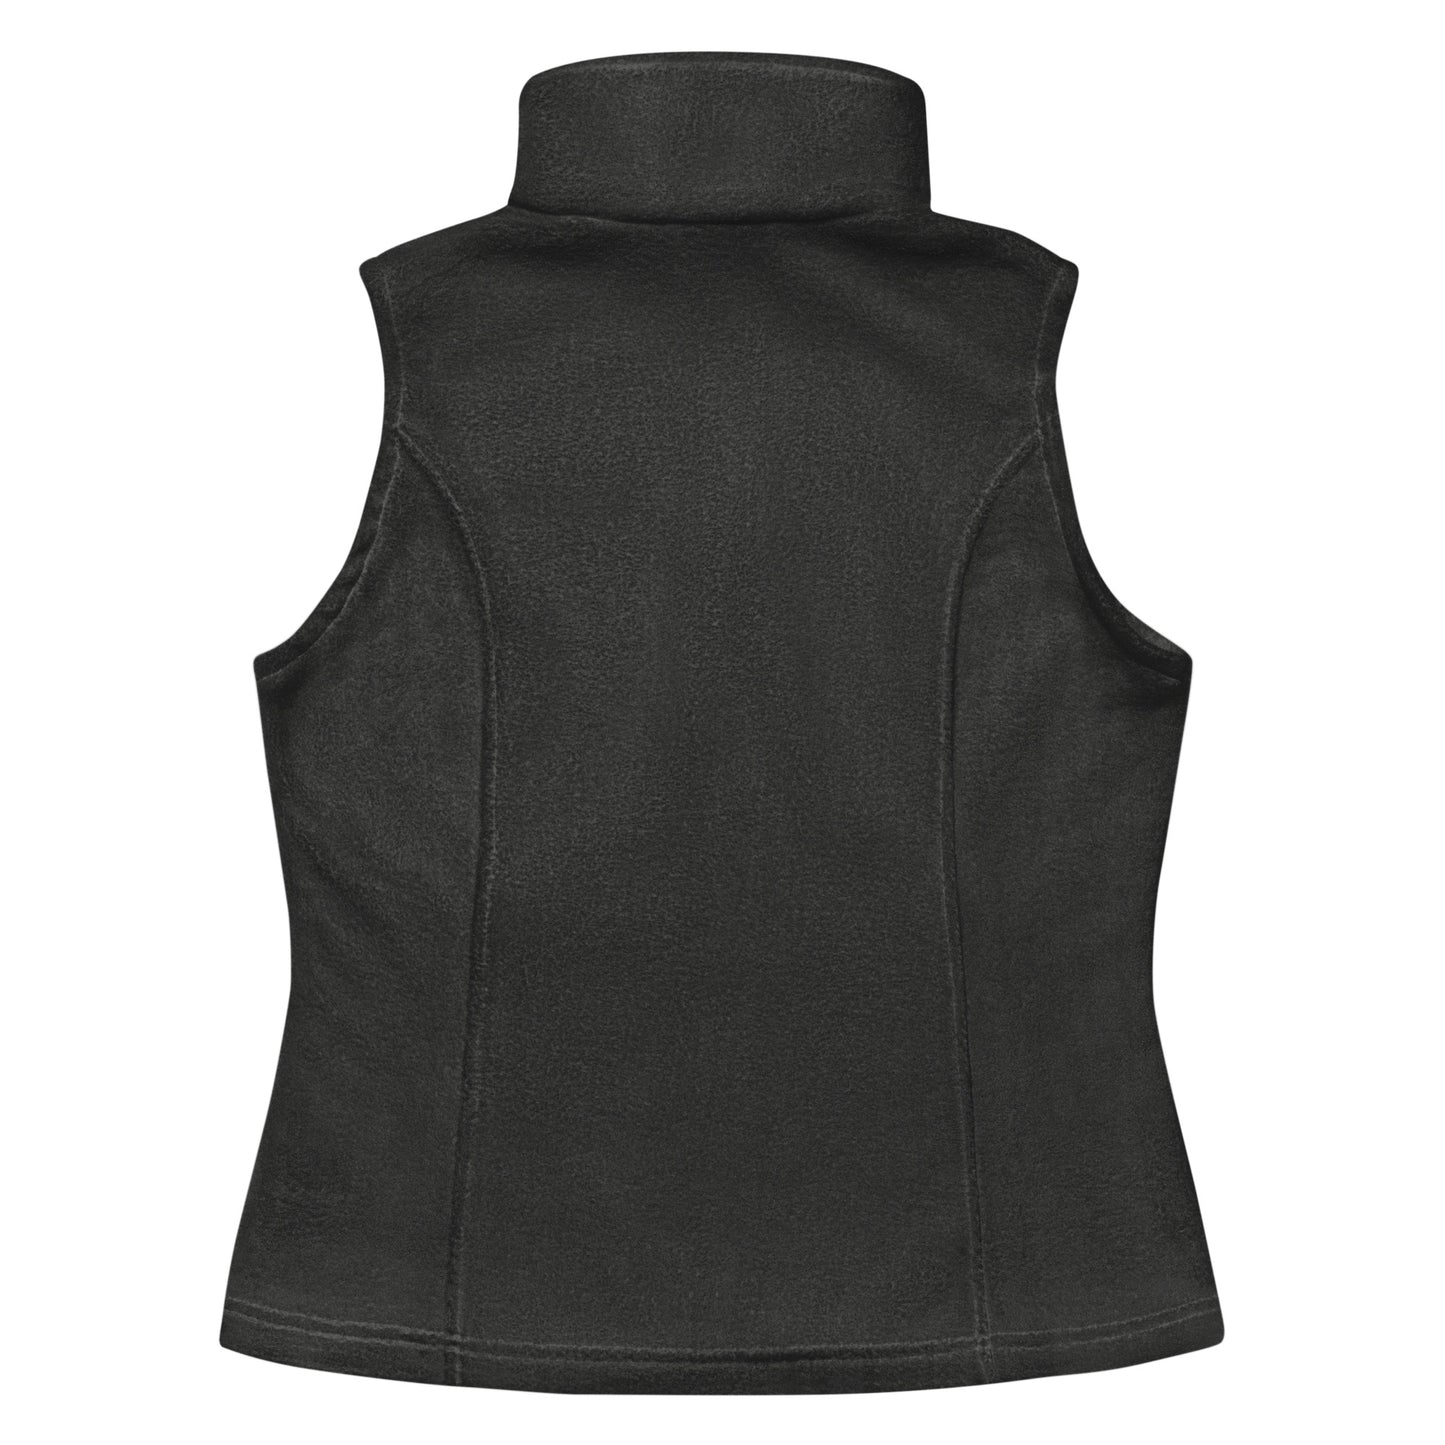 Hawks- Women’s Columbia fleece vest